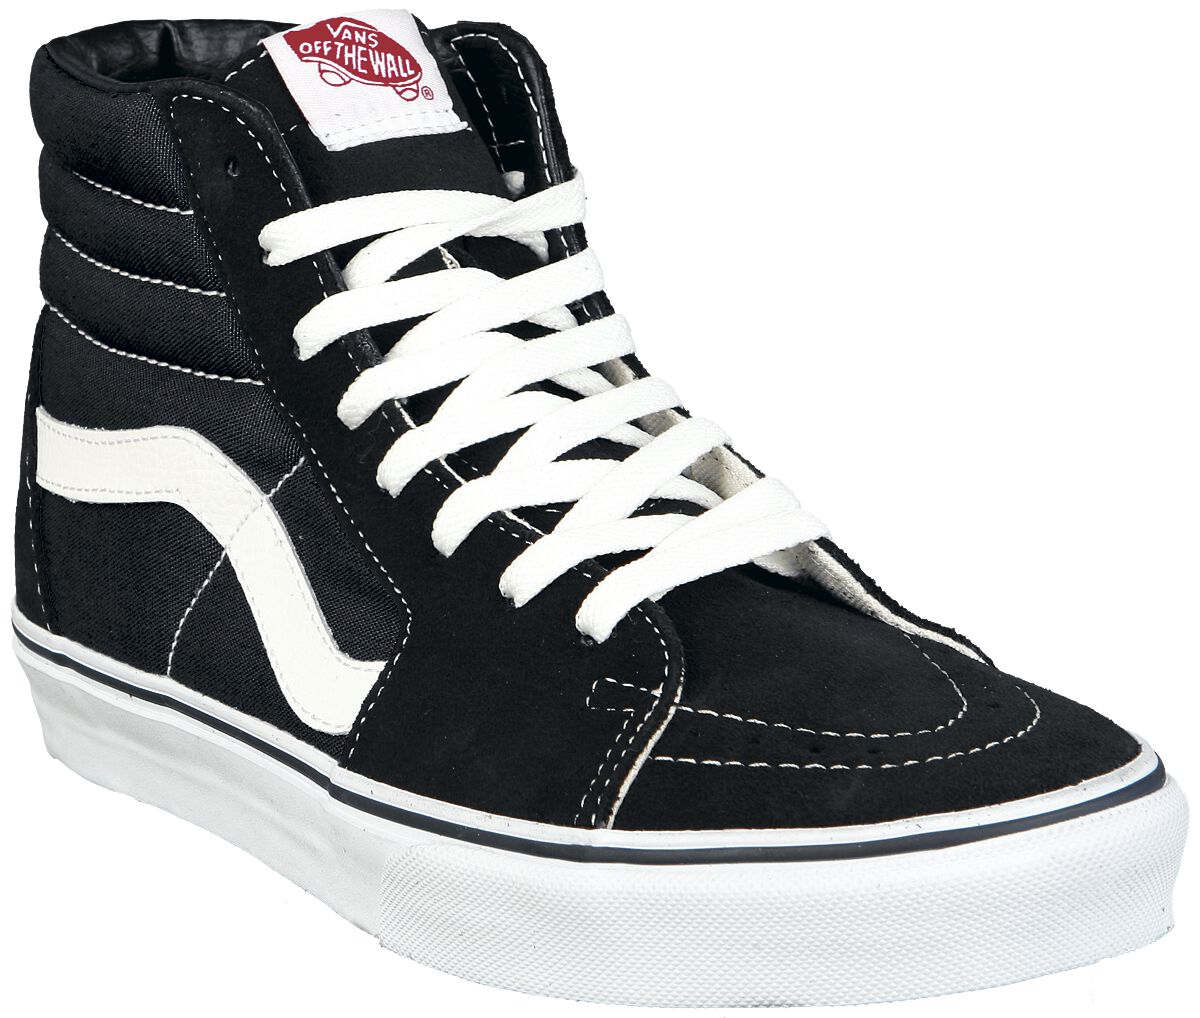 Vans Sneaker high - SK8-Hi - EU37 bis EU47 - Größe EU47 - schwarz/weiß